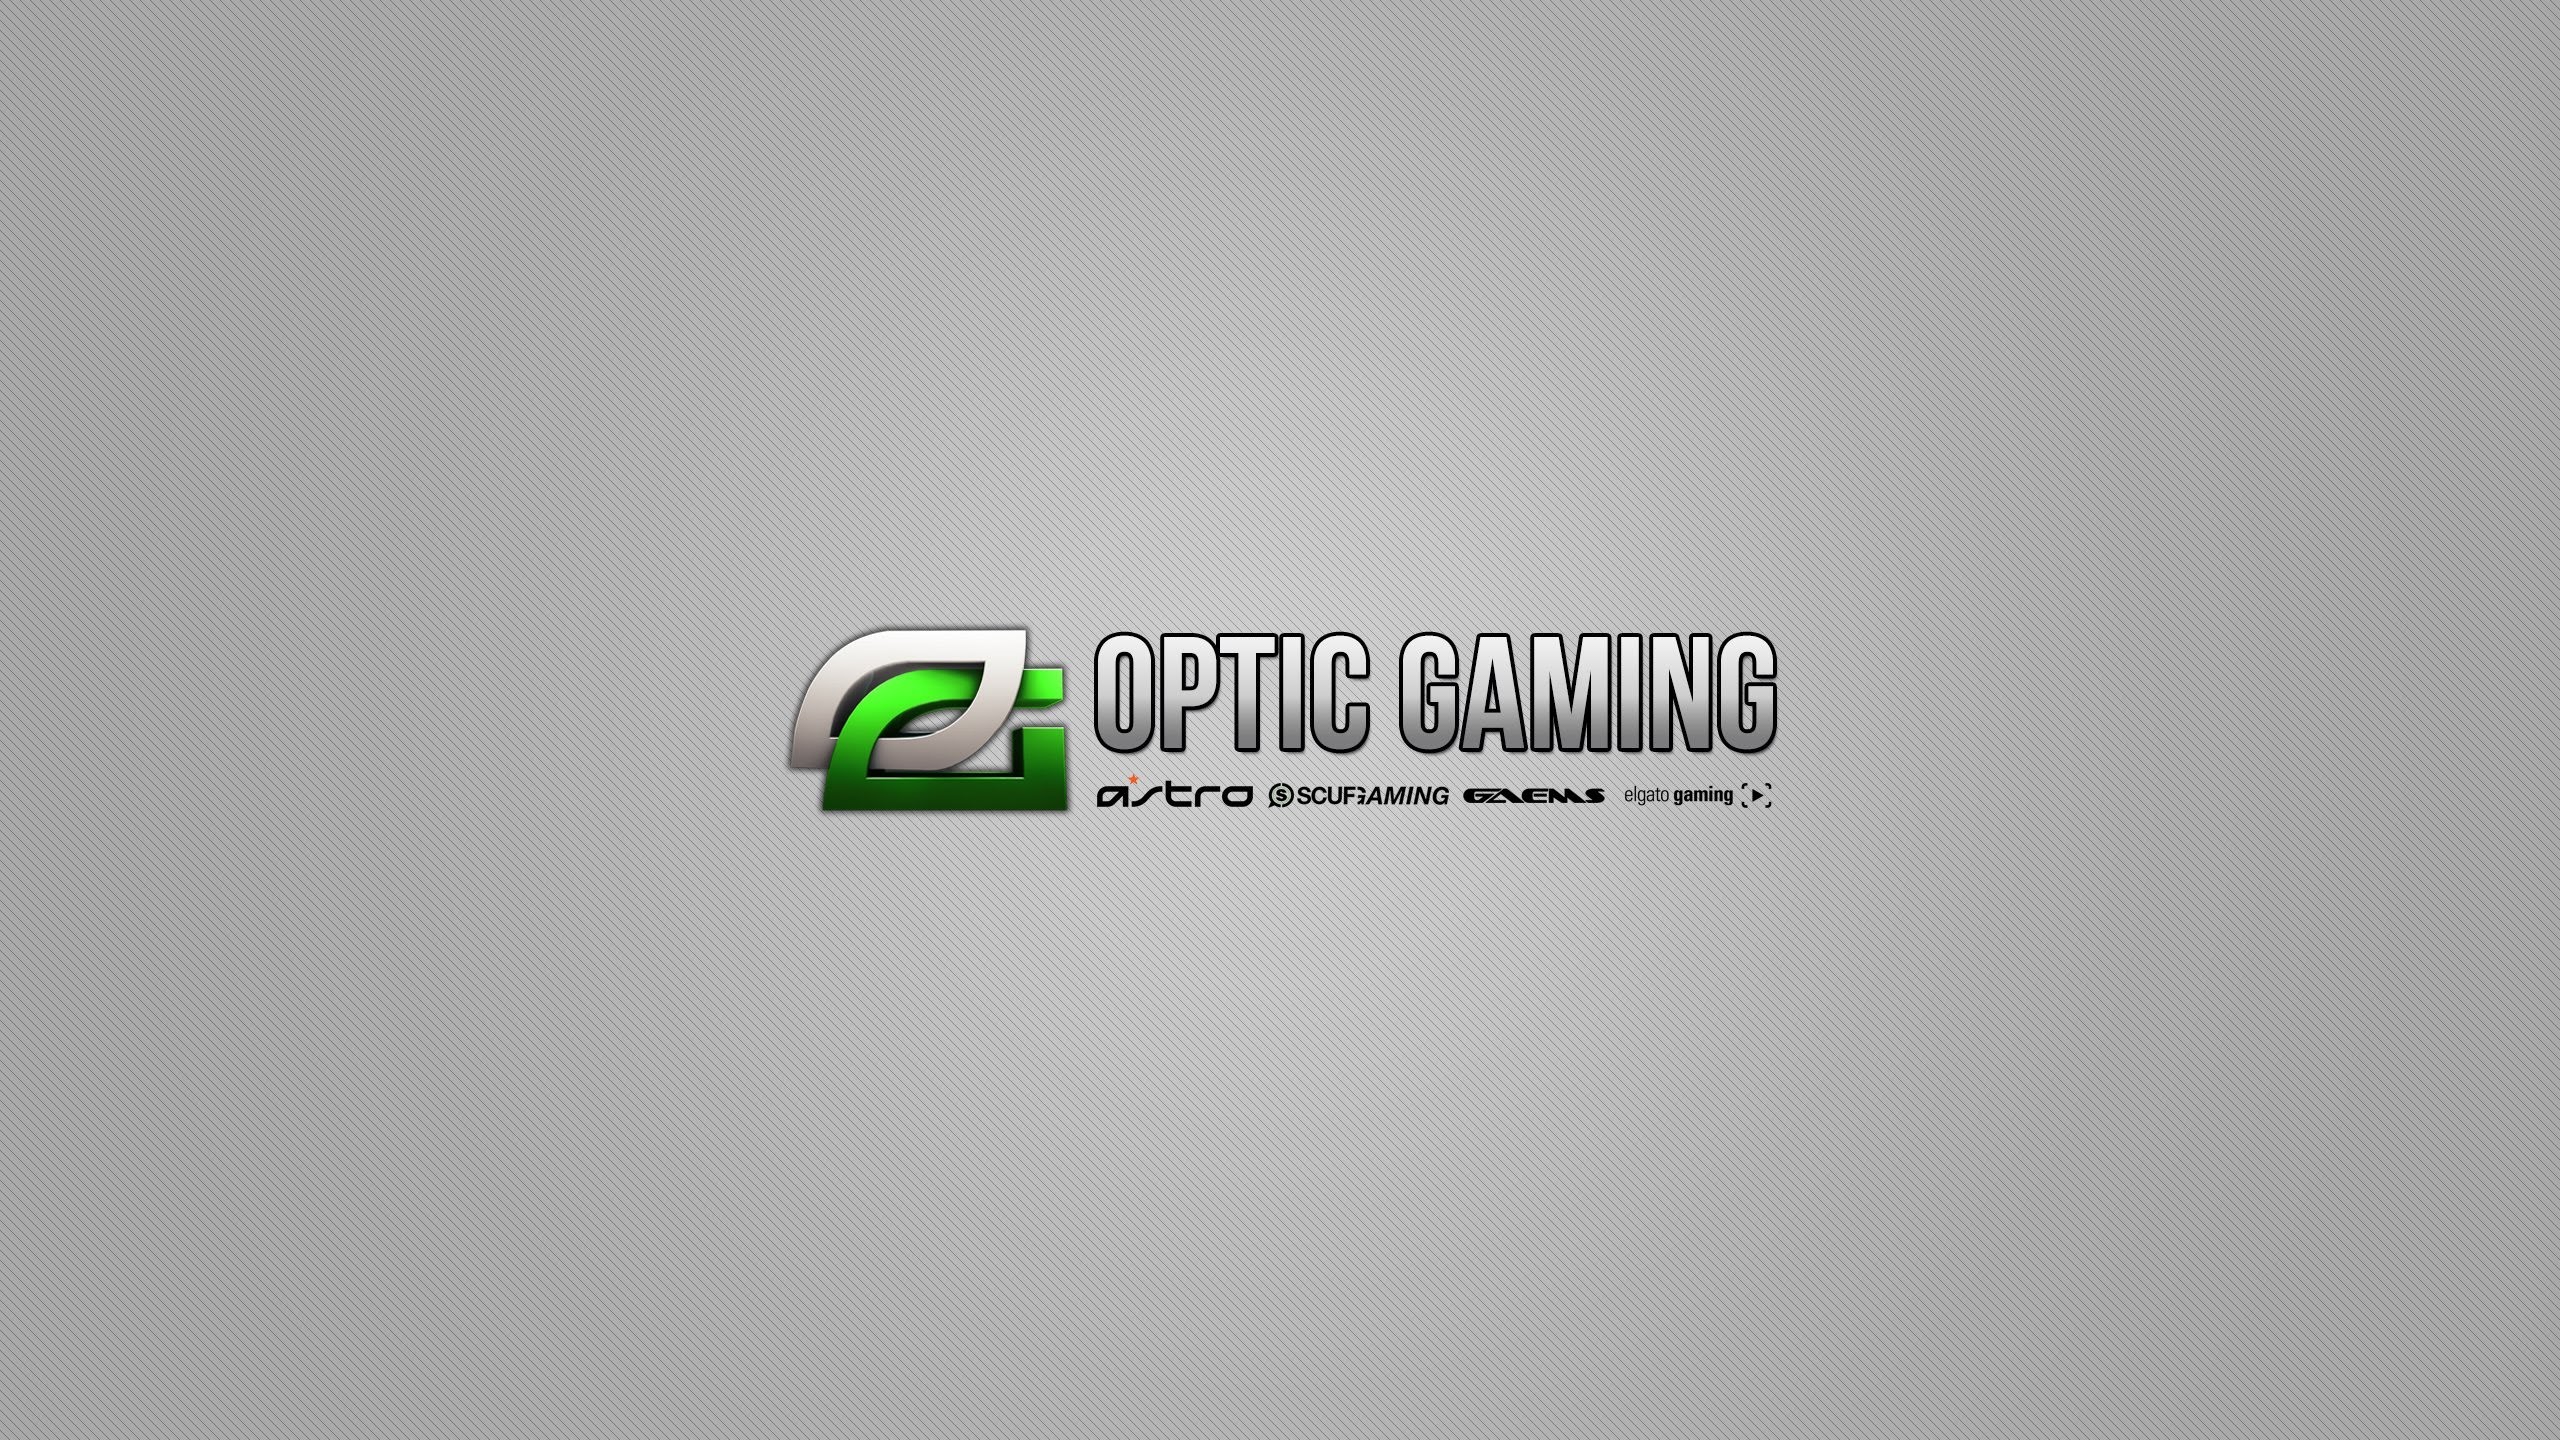 Optic gaming wf1012